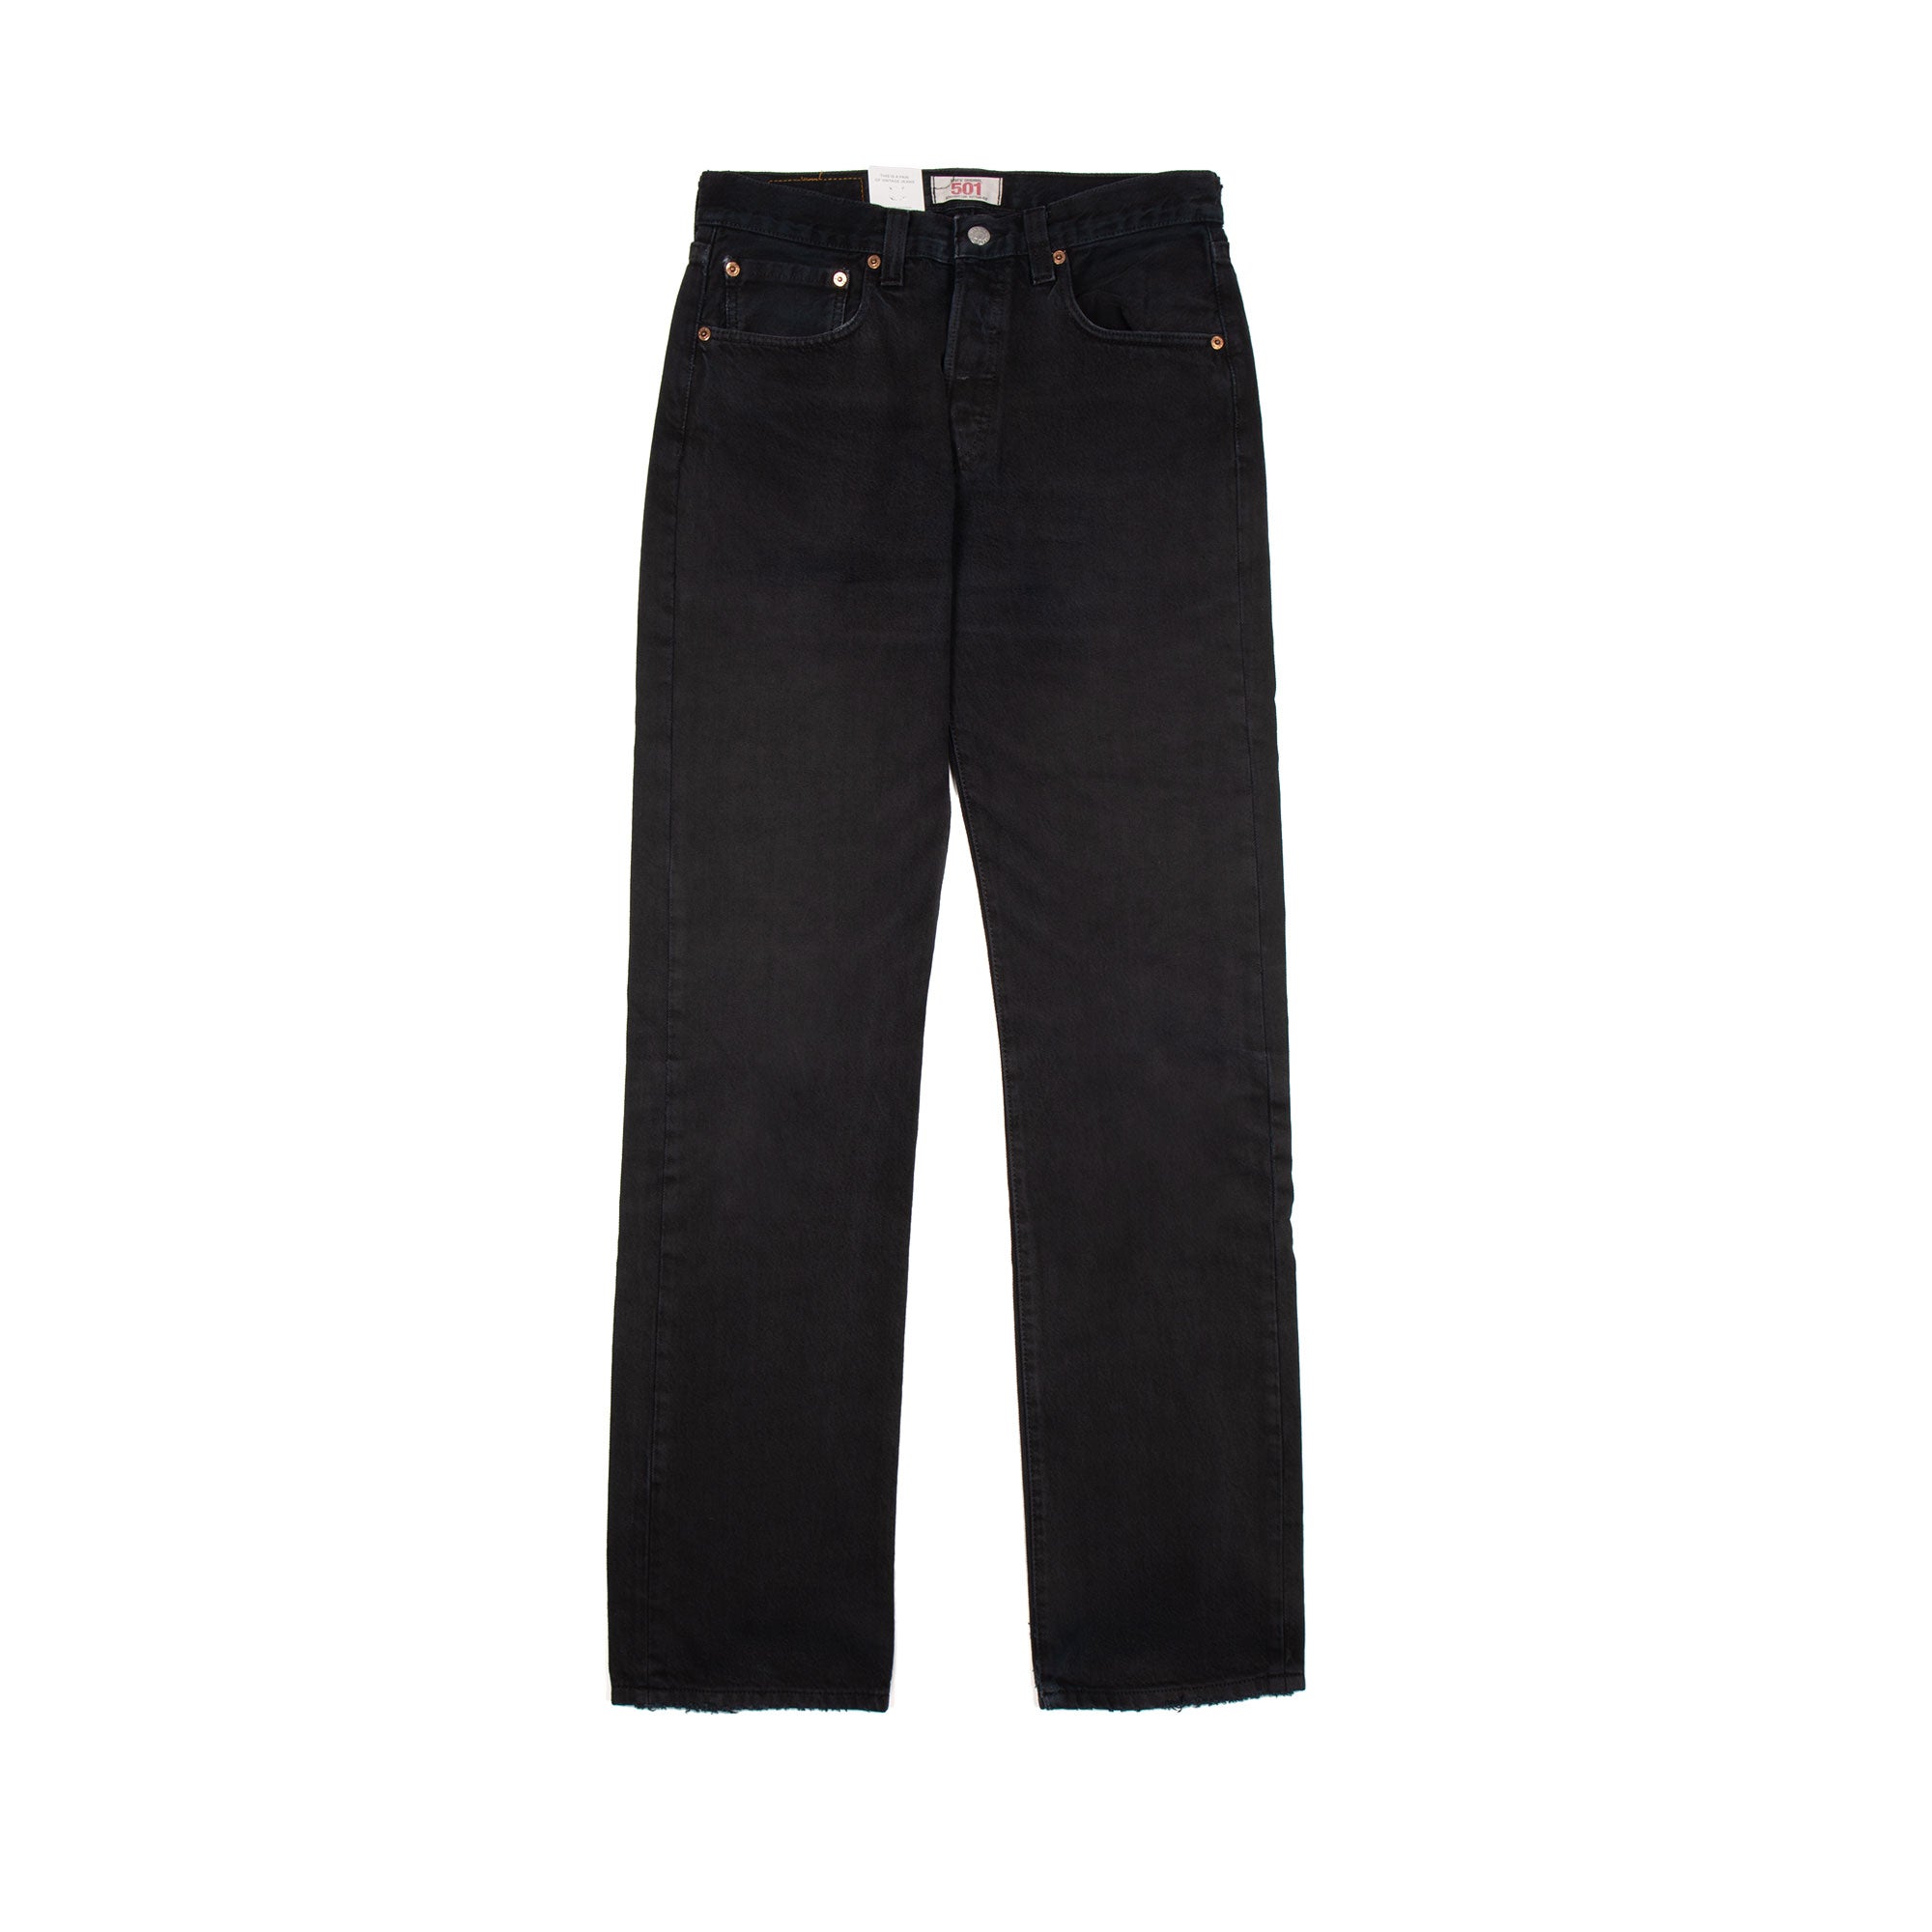  | Archive Jeans Levis 501 jeans black W30